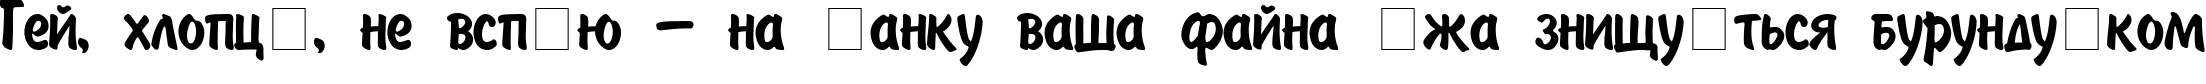 Пример написания шрифтом Painter текста на украинском